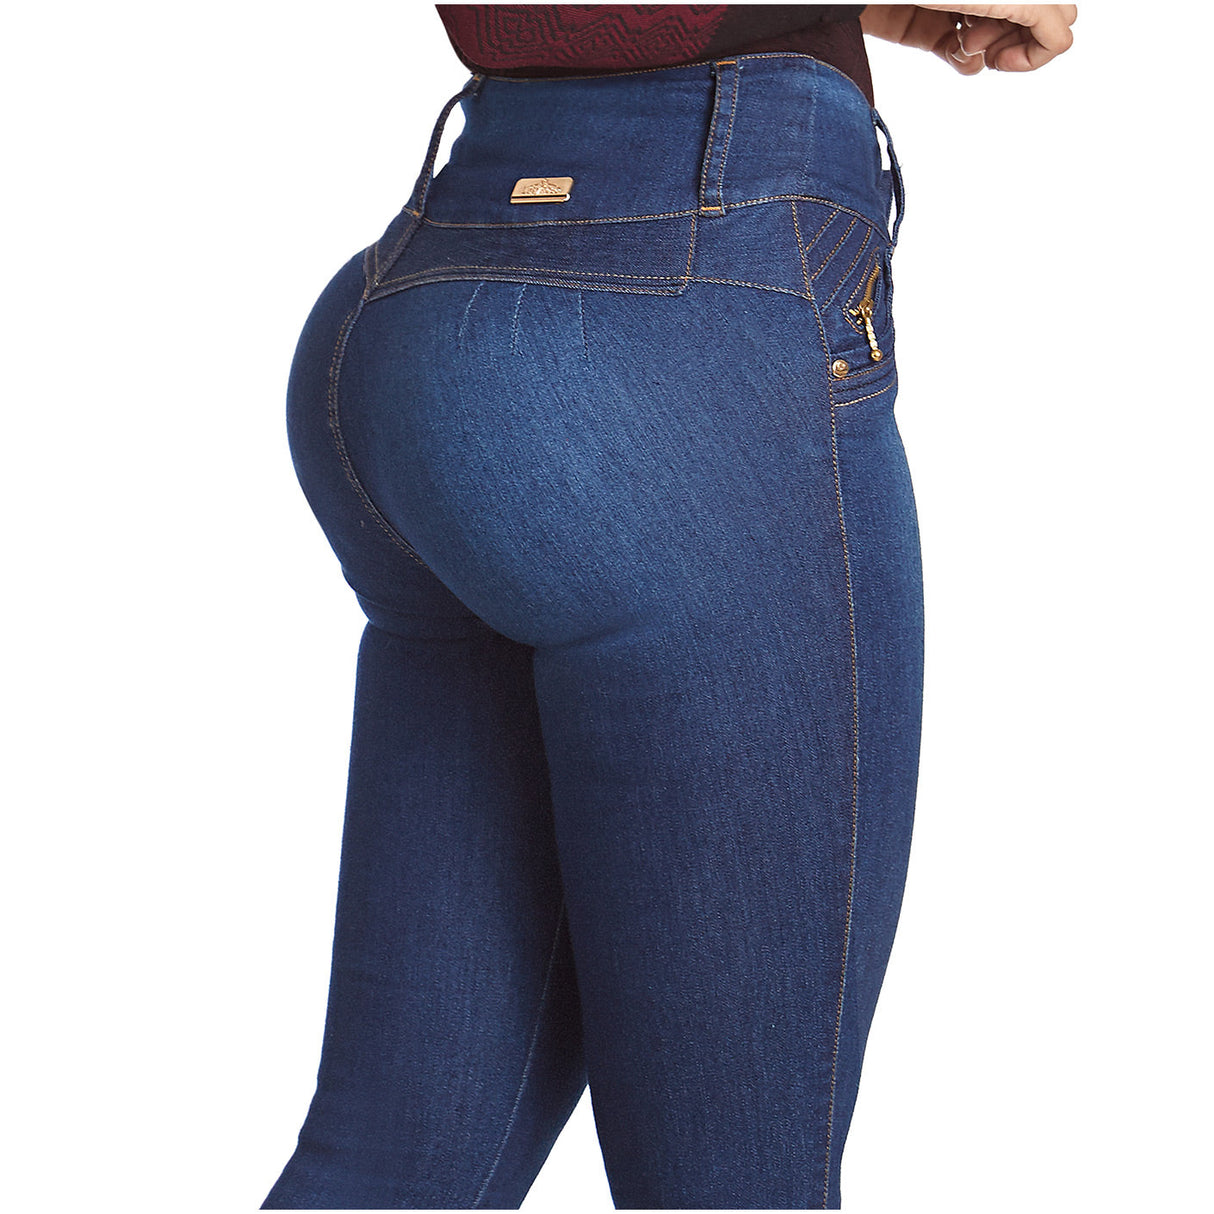 Jeans Colombiano Levanta Pompa Modelo 2044 - Gauki Jeans